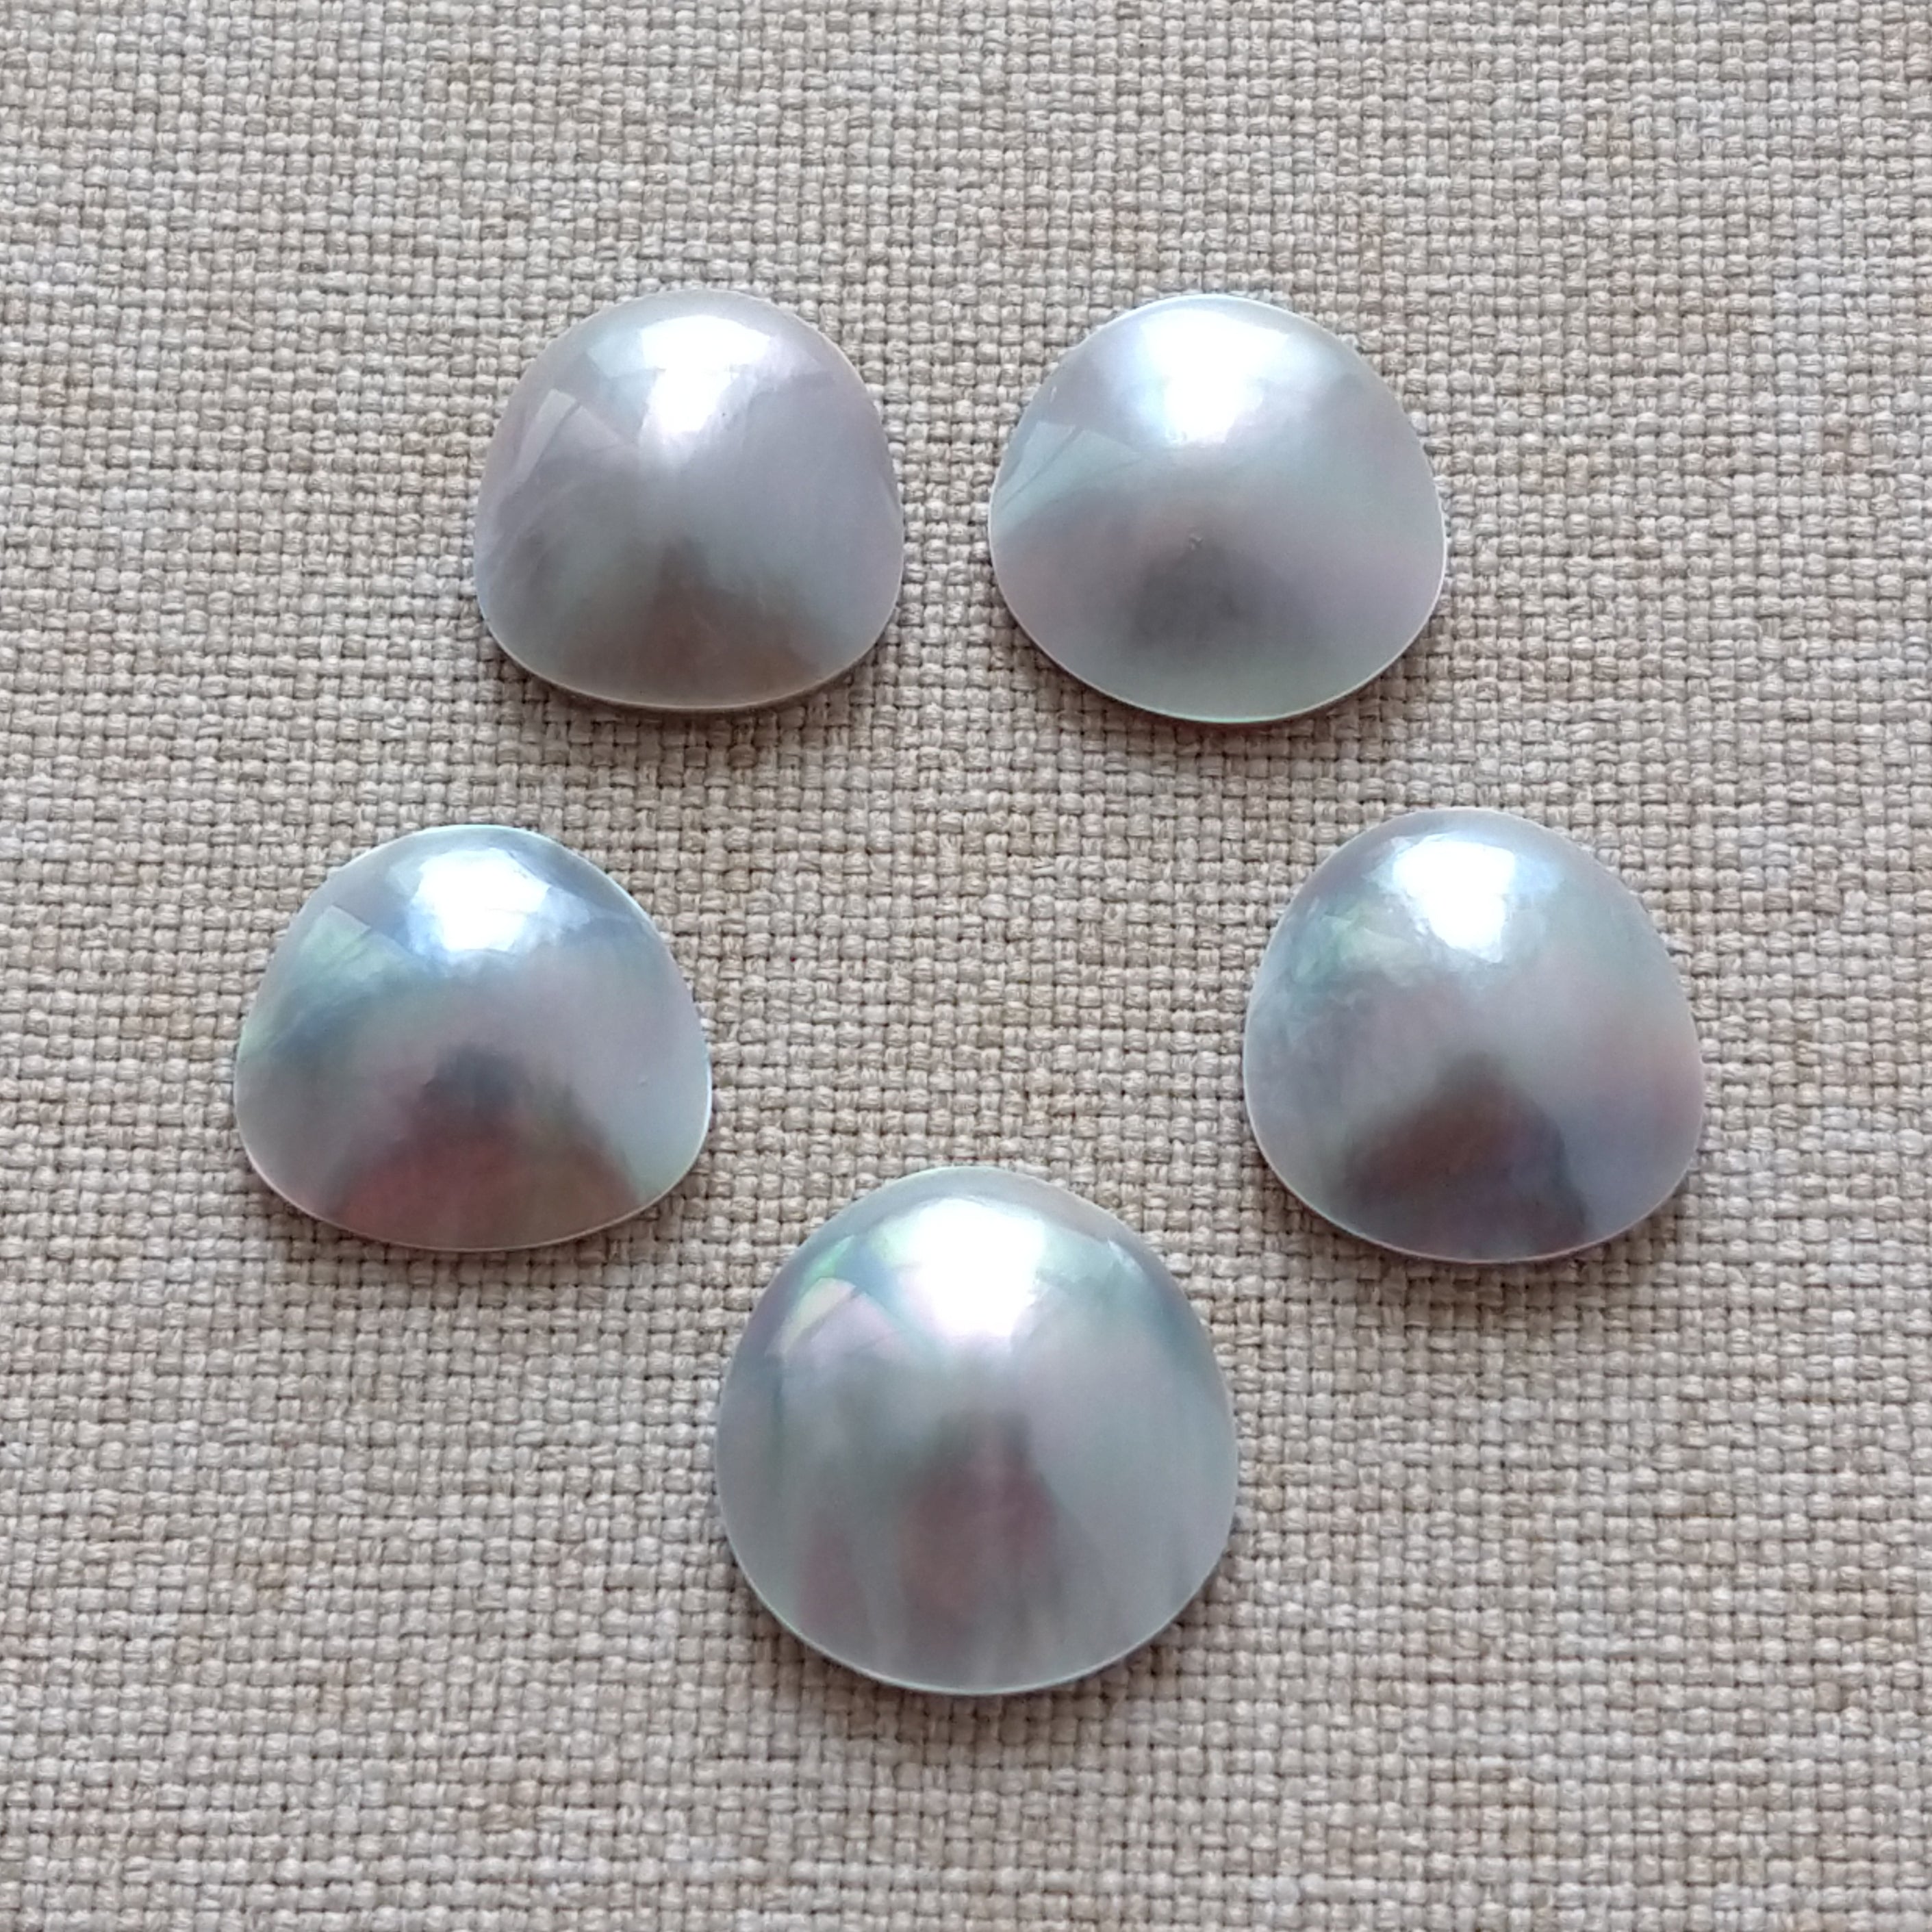 5 Cortez Mabe Pearls B grade